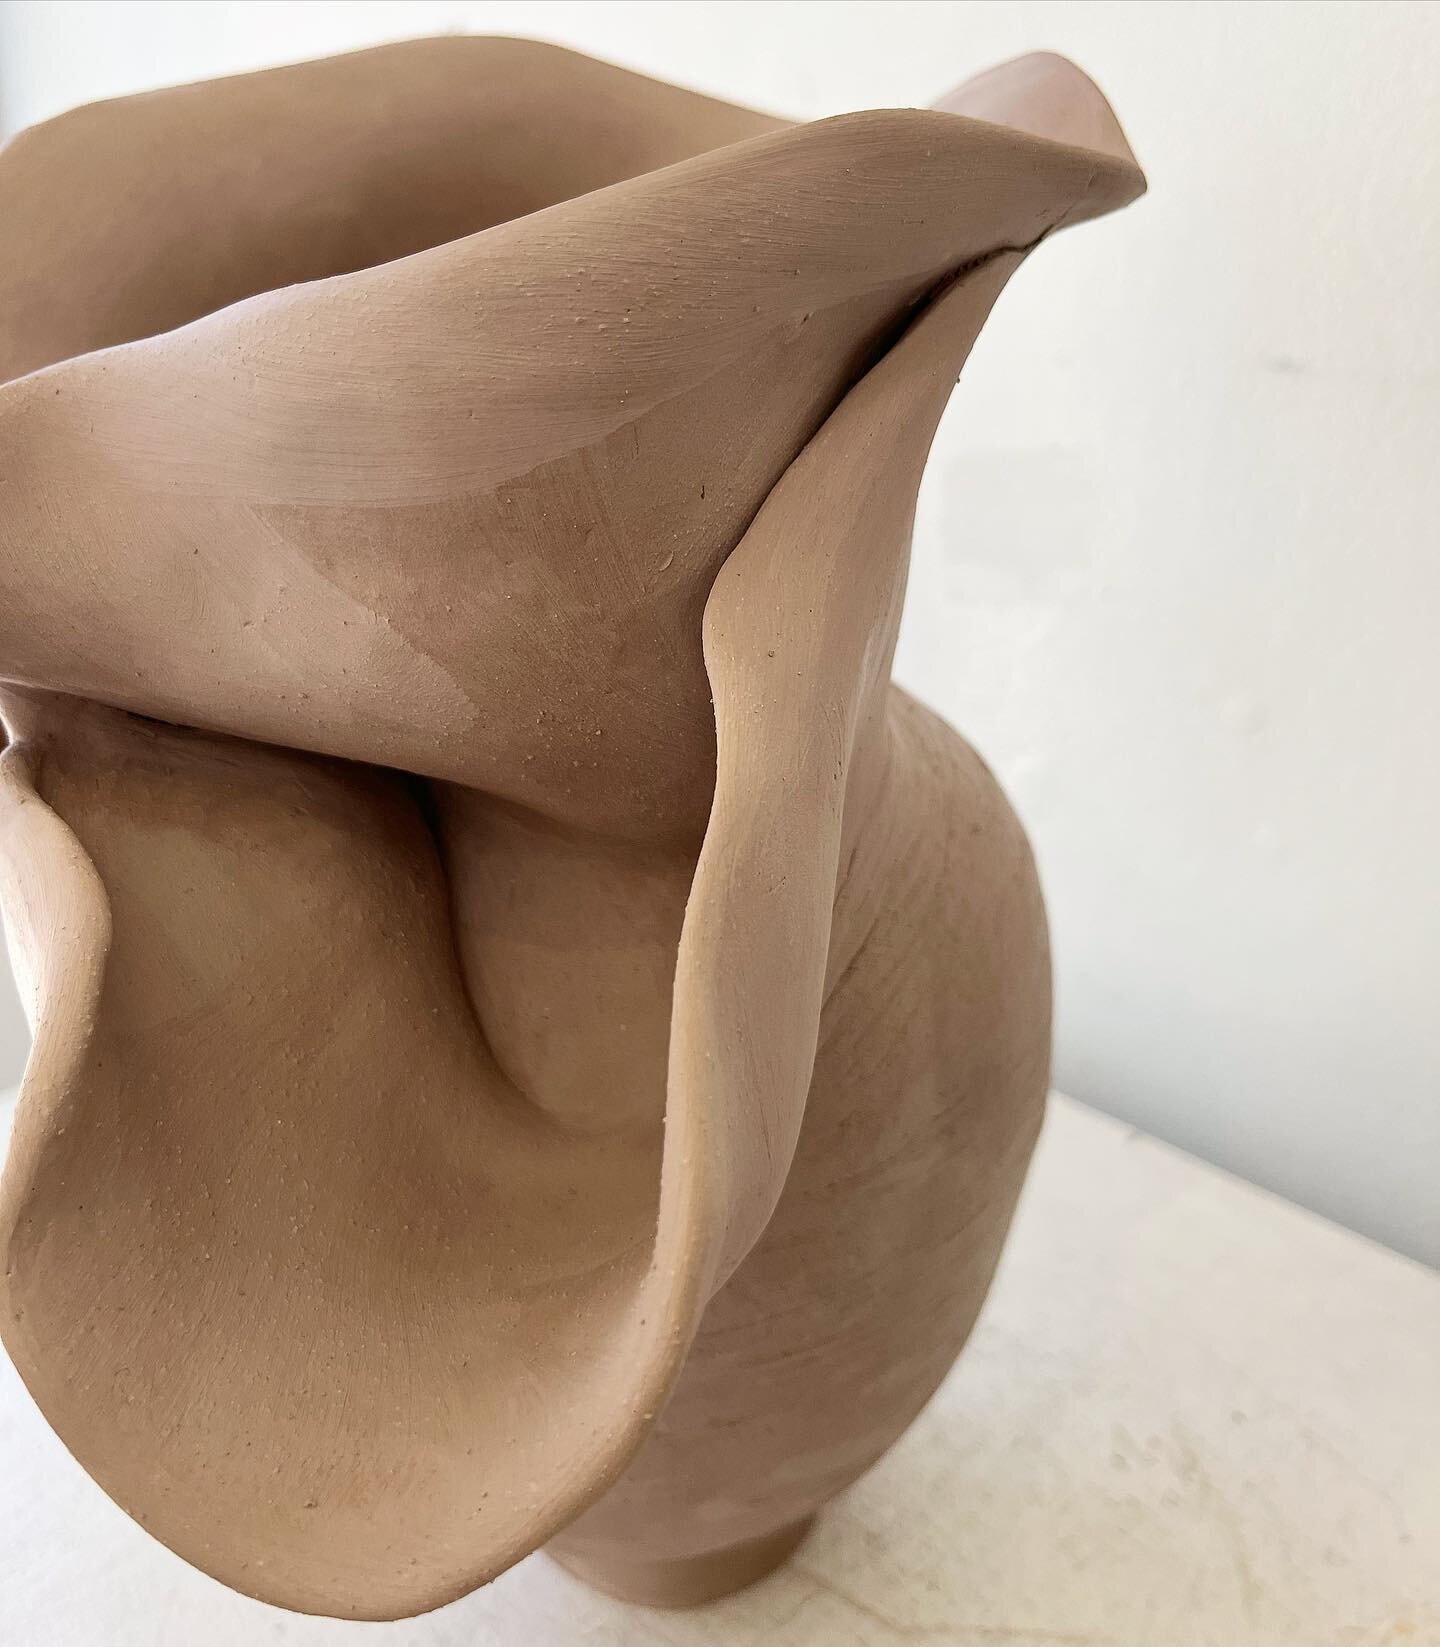 Languid . wip

#meceramics #claysculptute #ceramicsculpture